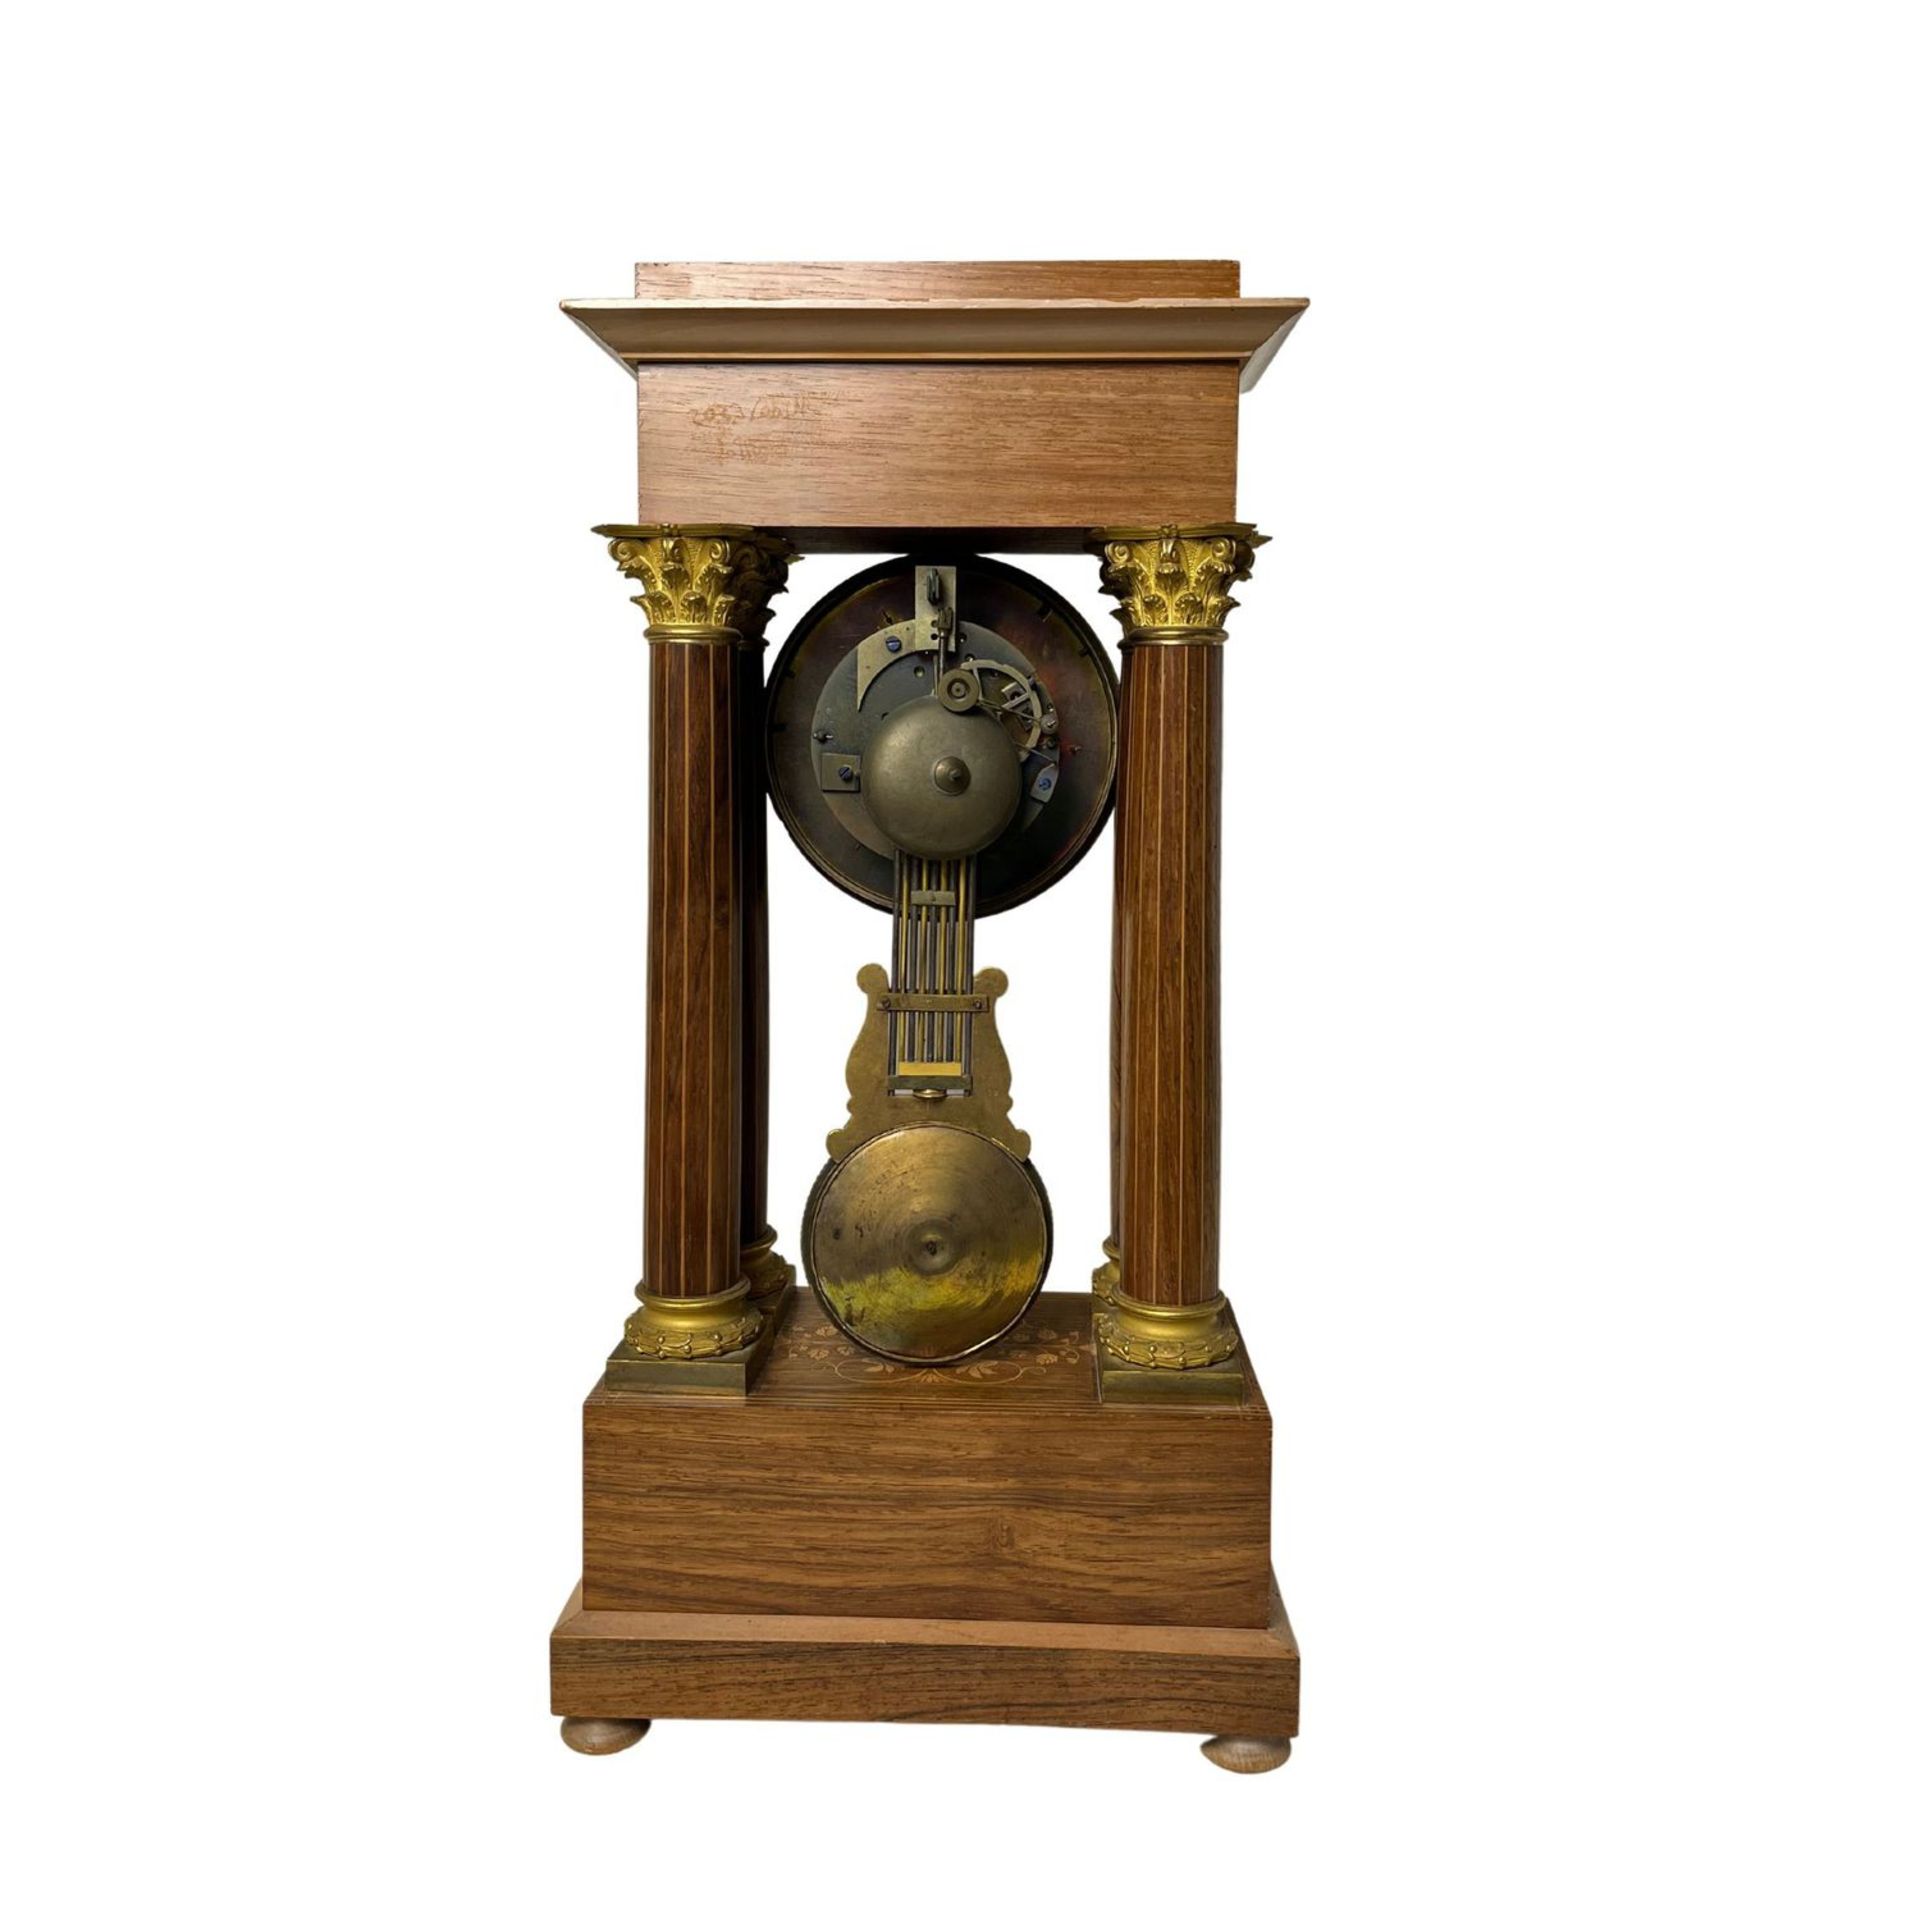 Pendulum clock - Image 4 of 4